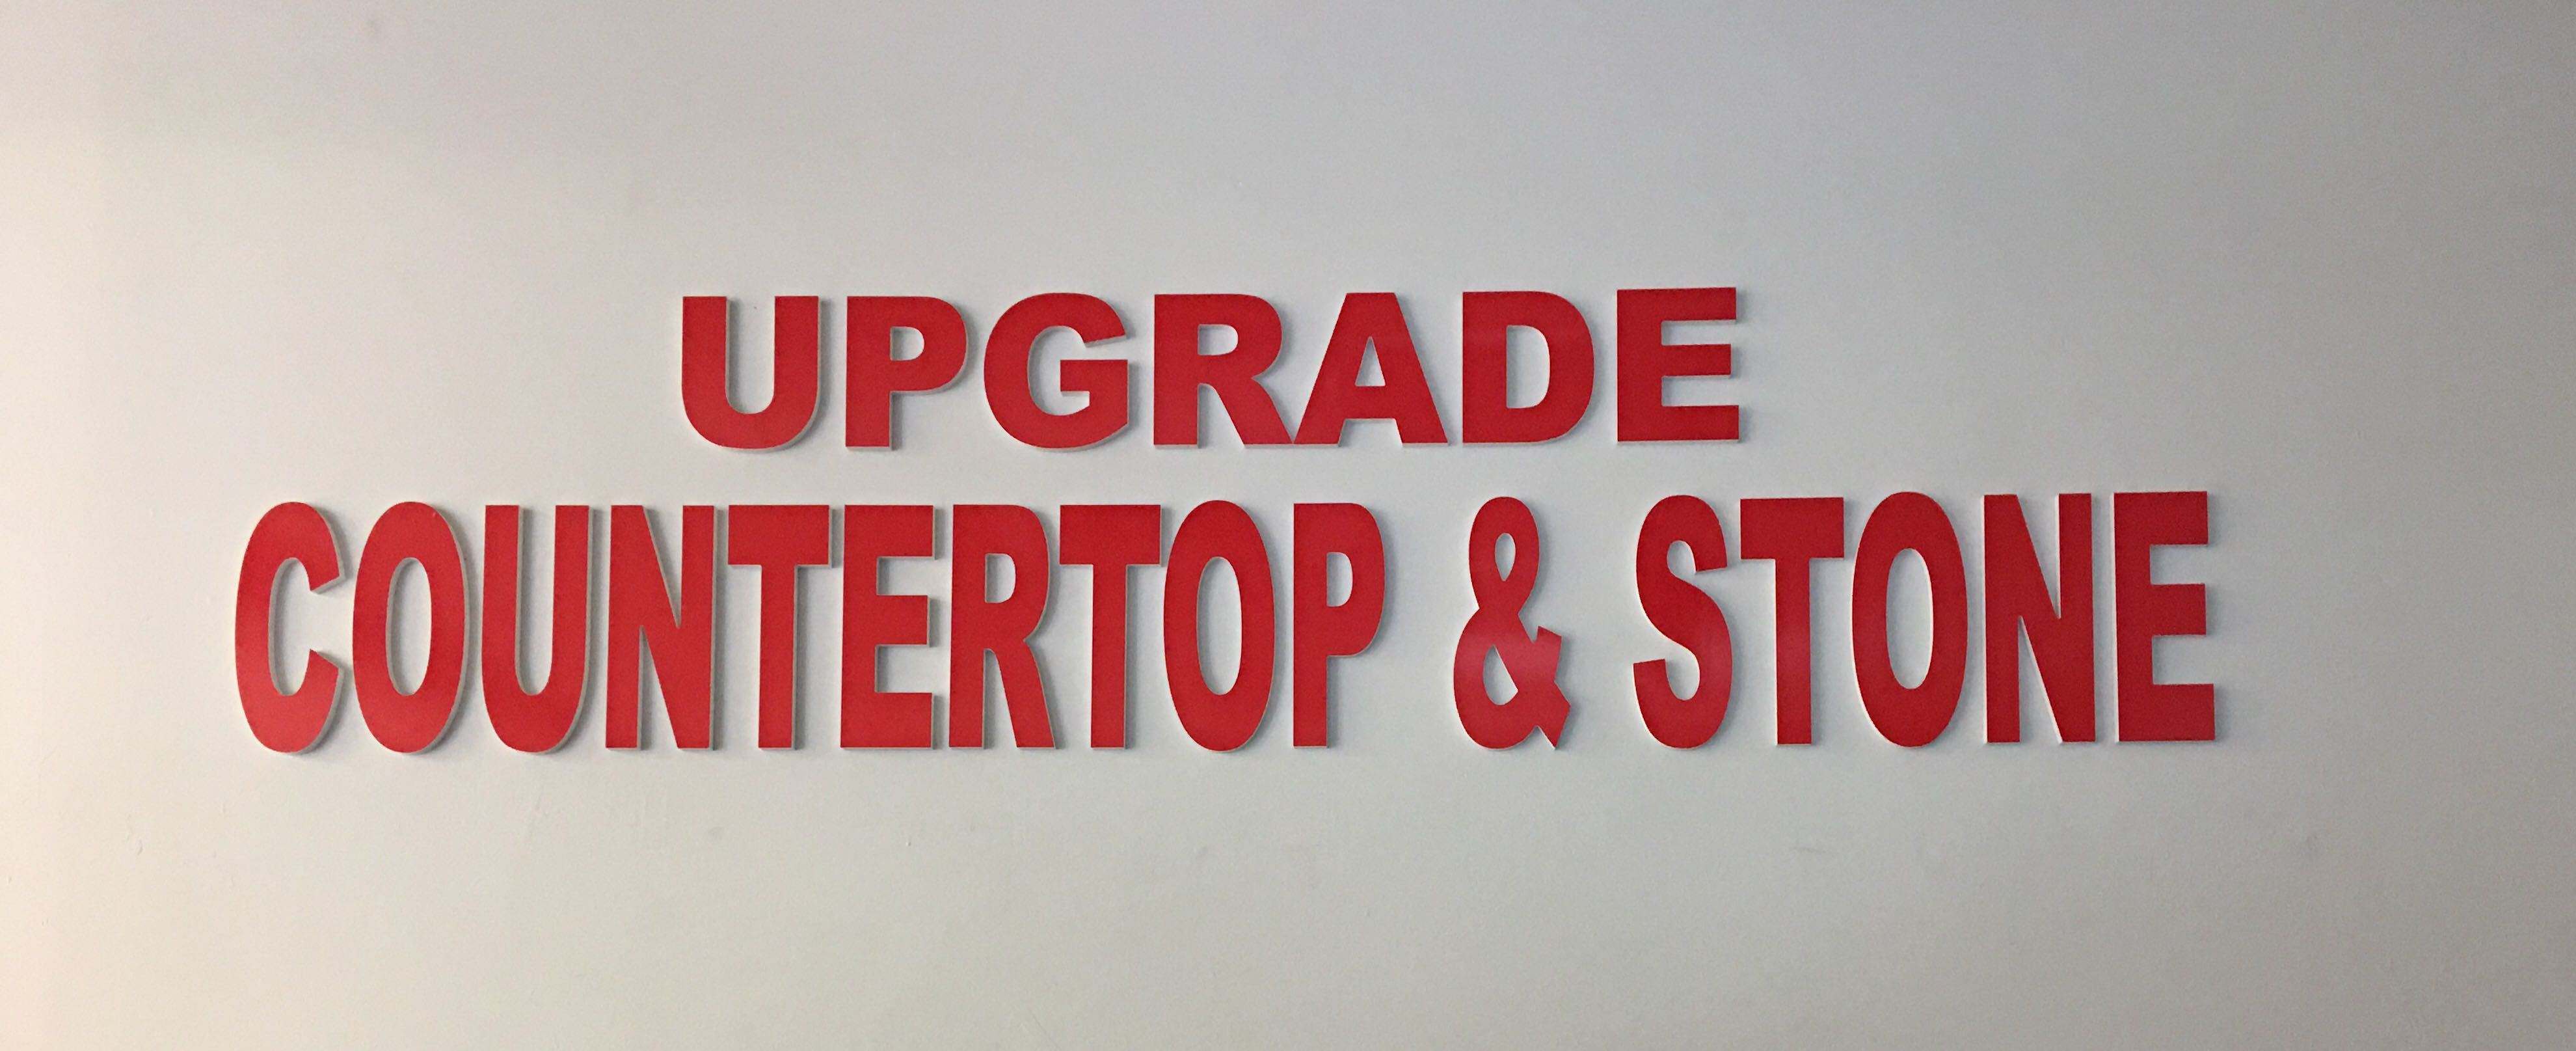 Upgrade Countertop & Stone's logo